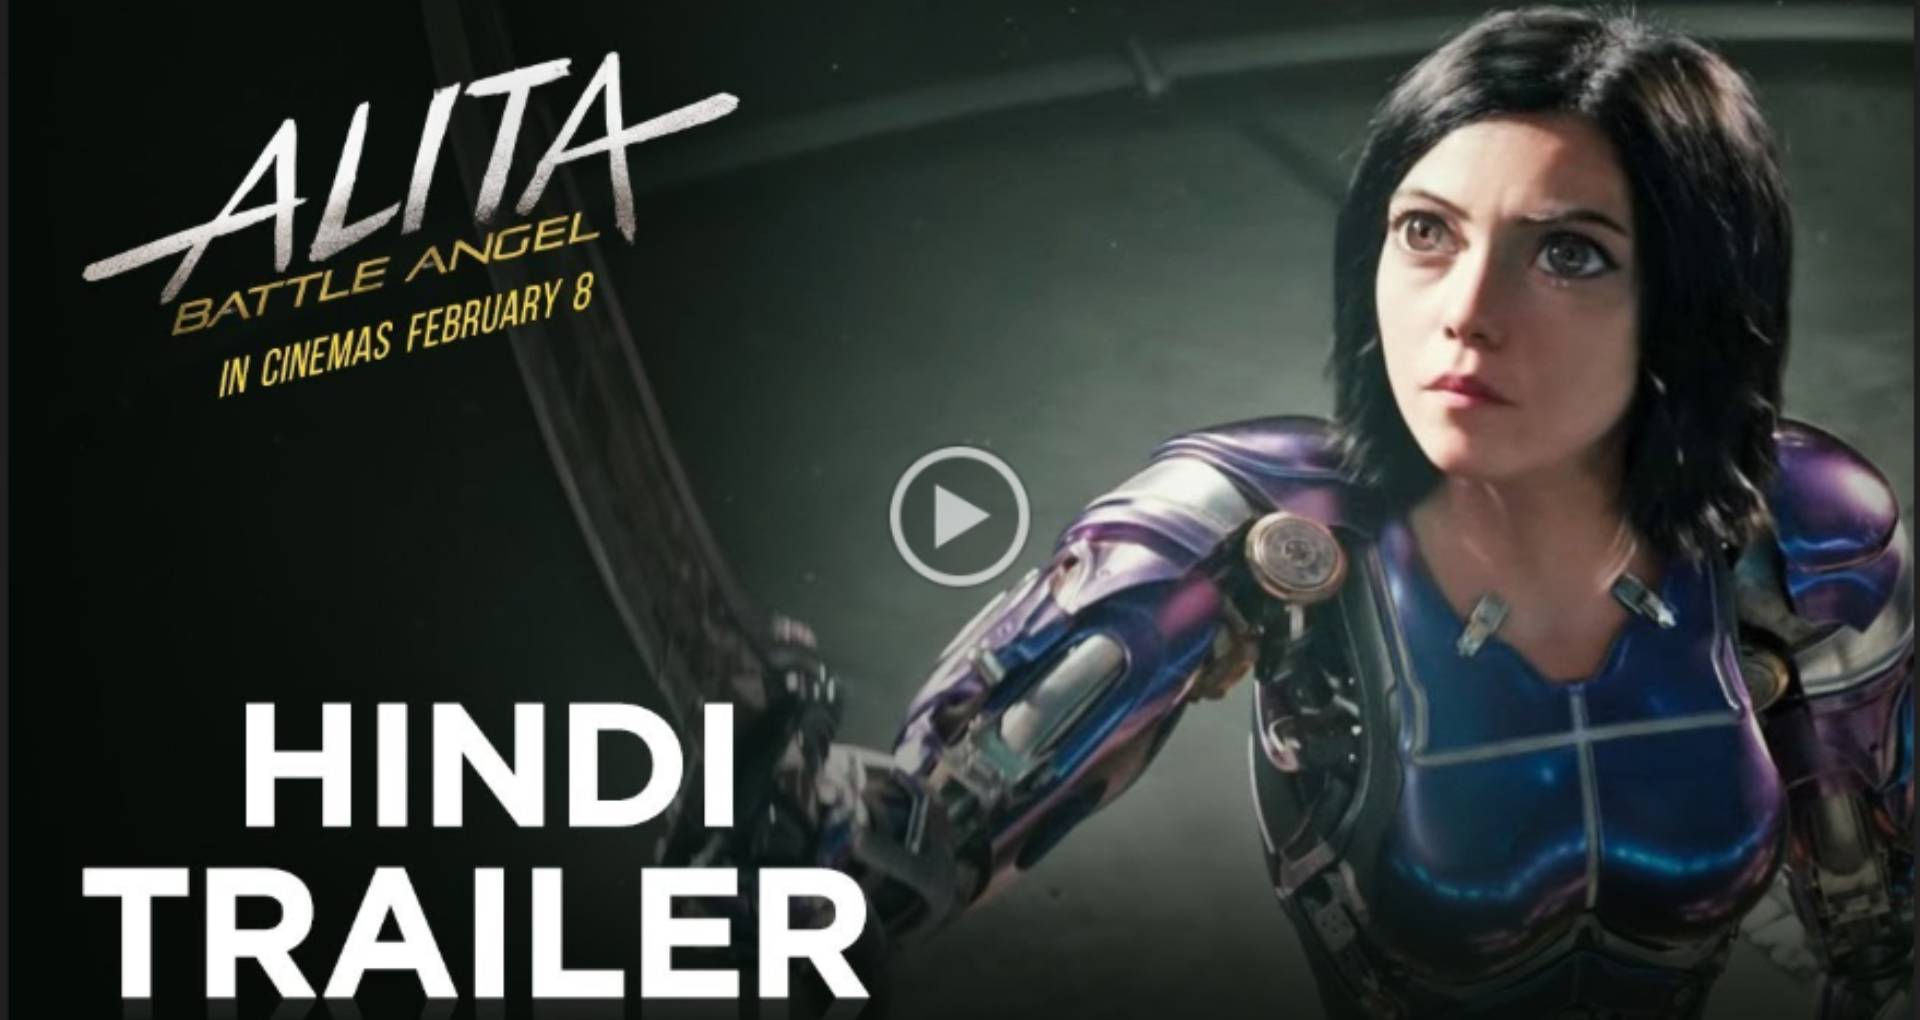 Alita Battle Angel Trailer: हॉलीवुड की फिल्म ‘एलीटाः बैटल एंजेल’ का हिंदी ट्रेलर रिलीज, देखकर भूल जाएंगे ‘कृष 3’ और ‘रोबोट 2.0’